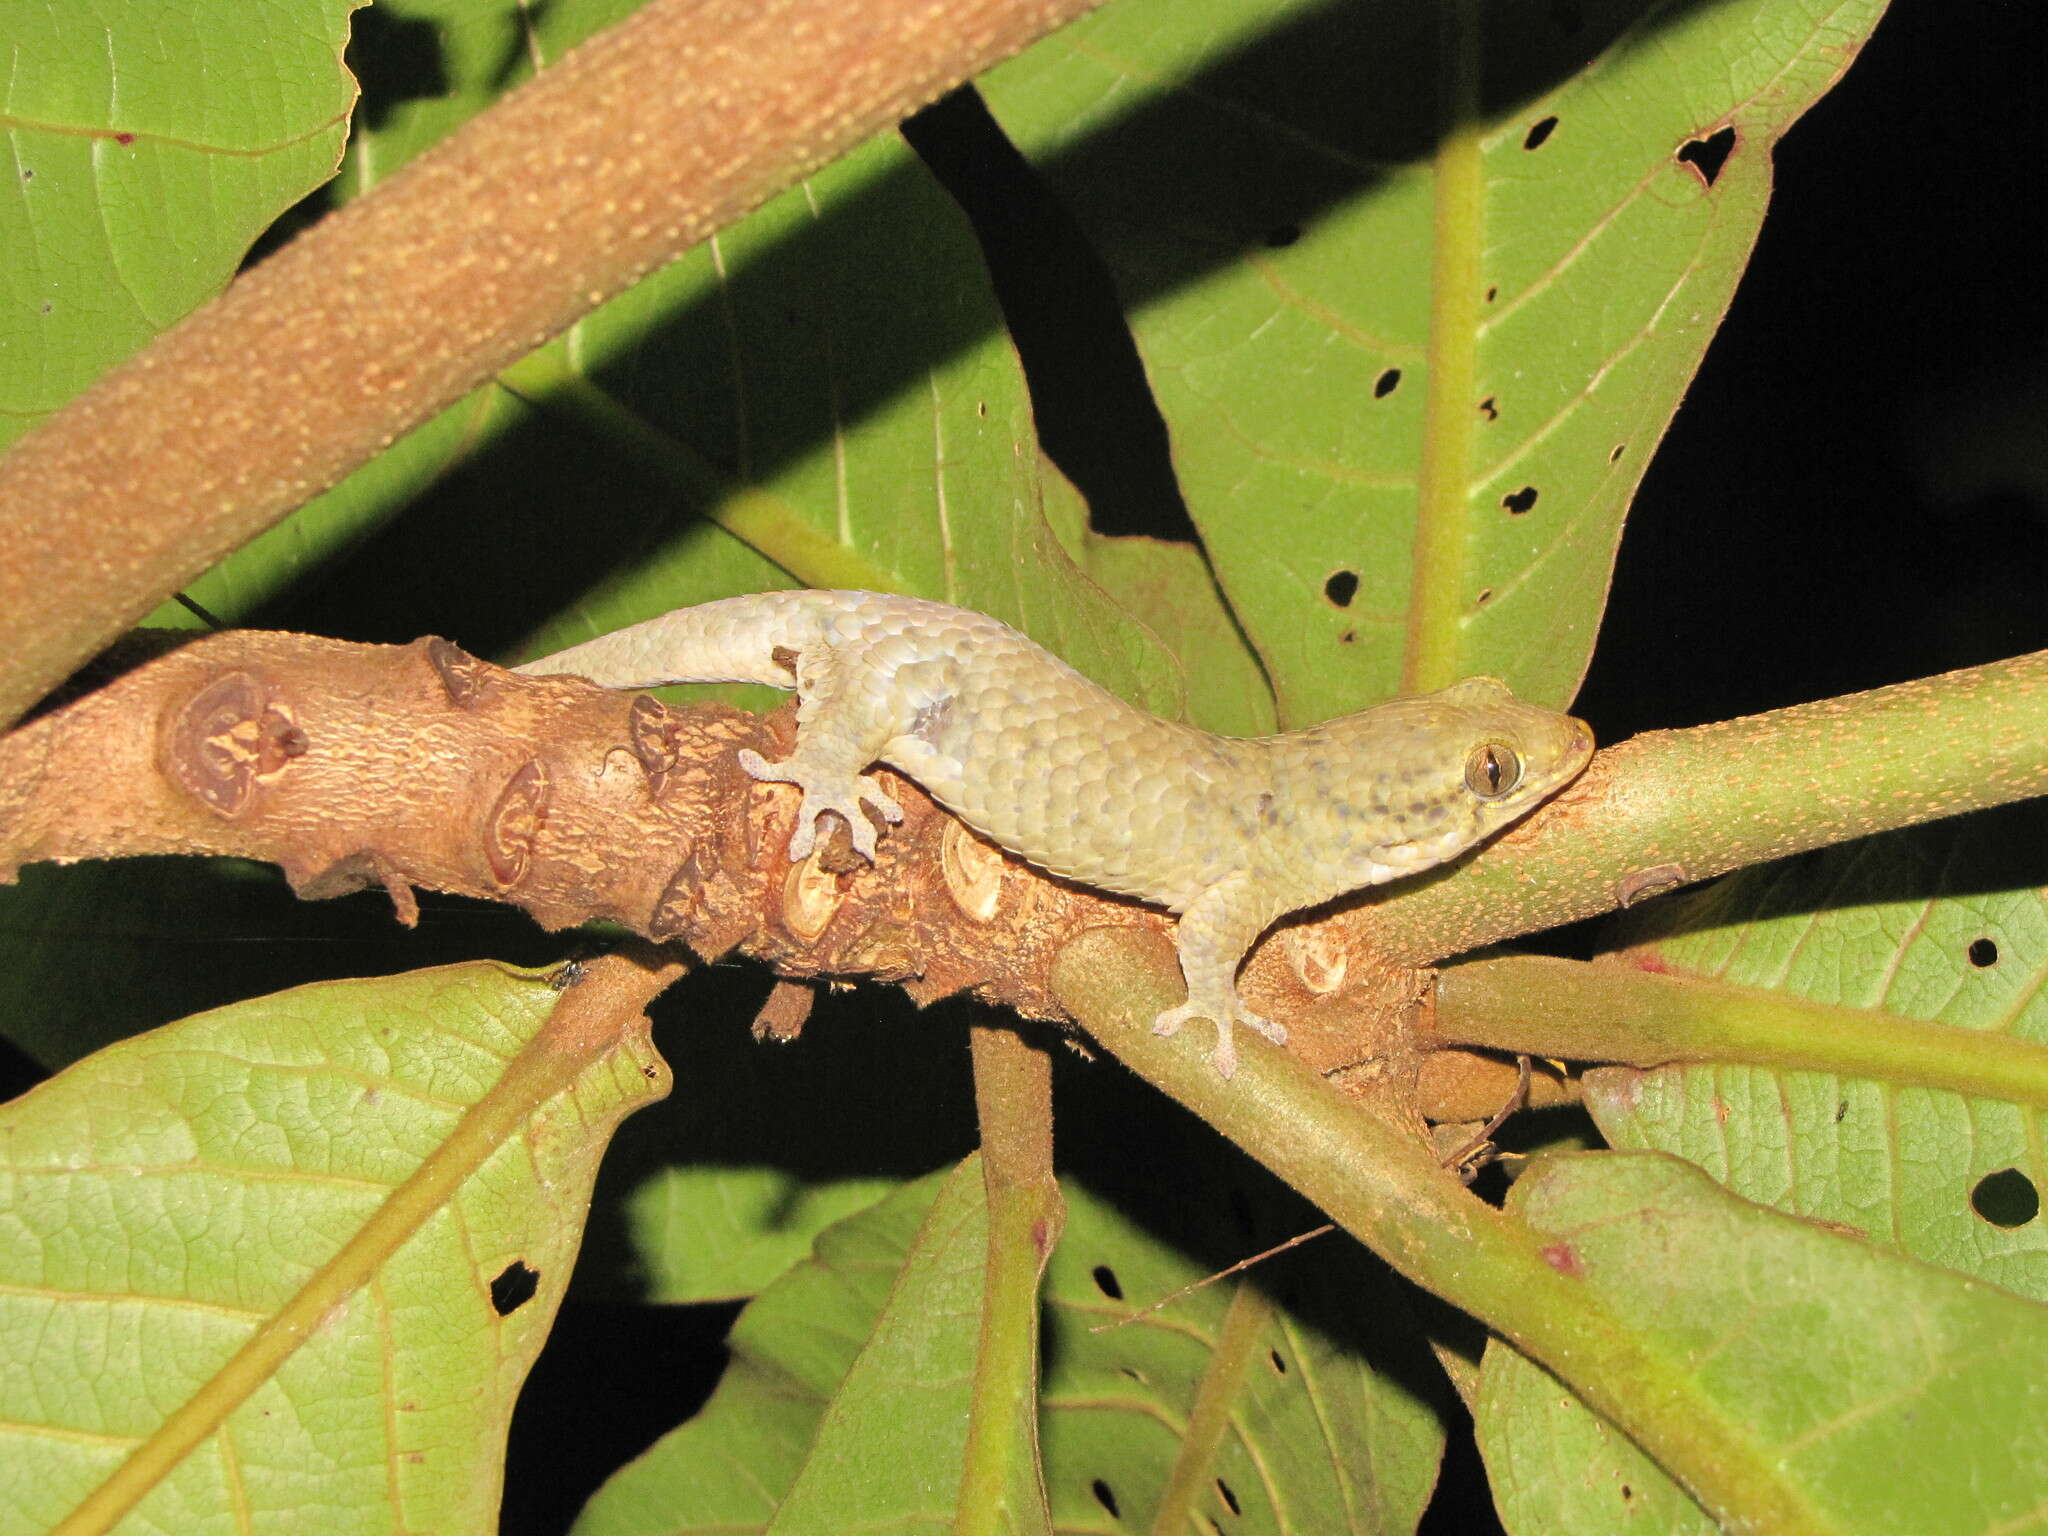 Sivun Geckolepis Grandidier 1867 kuva